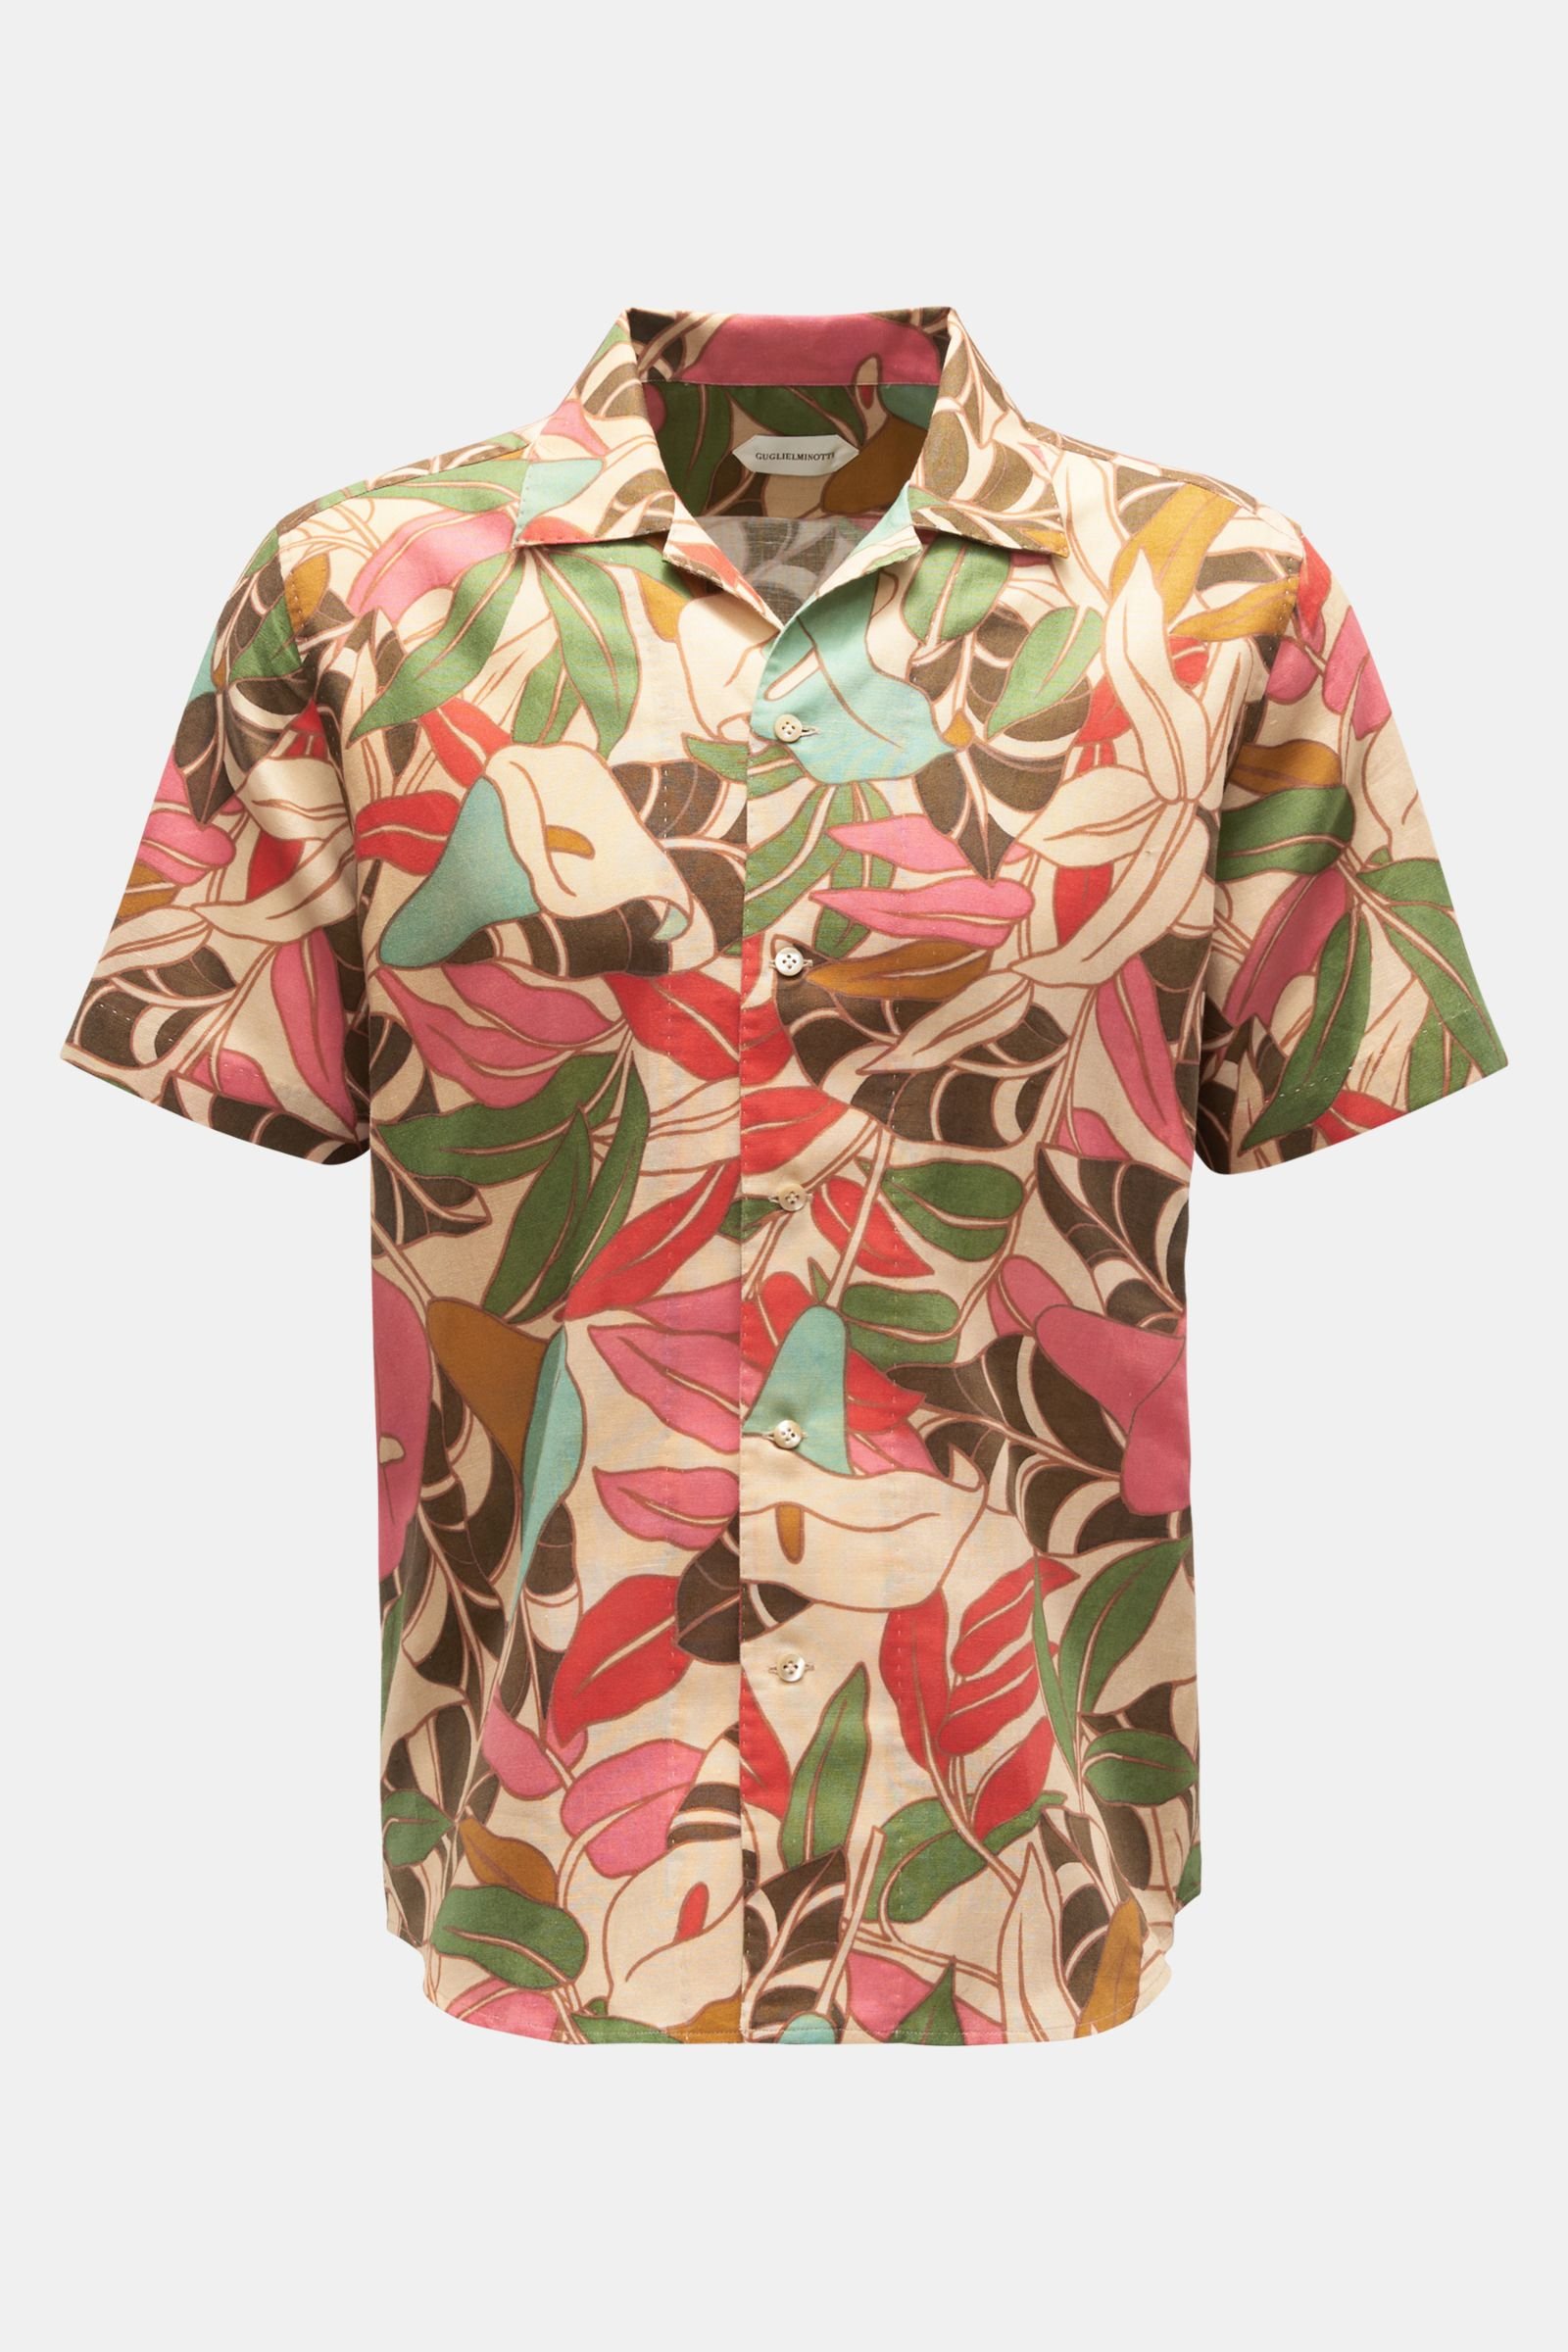 Short sleeve shirt Cuban collar red/light brown/green patterned